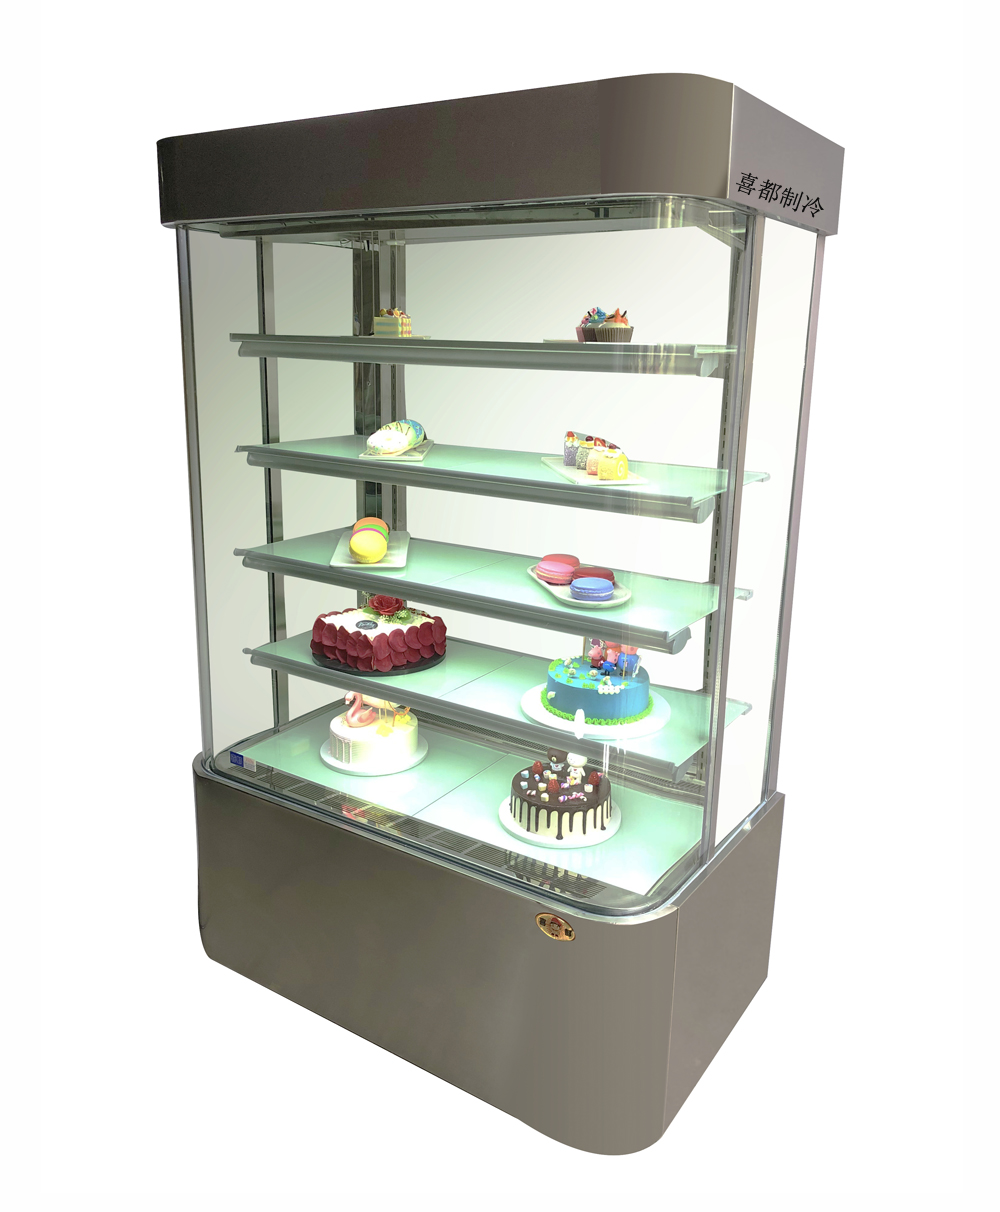 U-type stainless steel vertical display refrigeratorXID-UXB